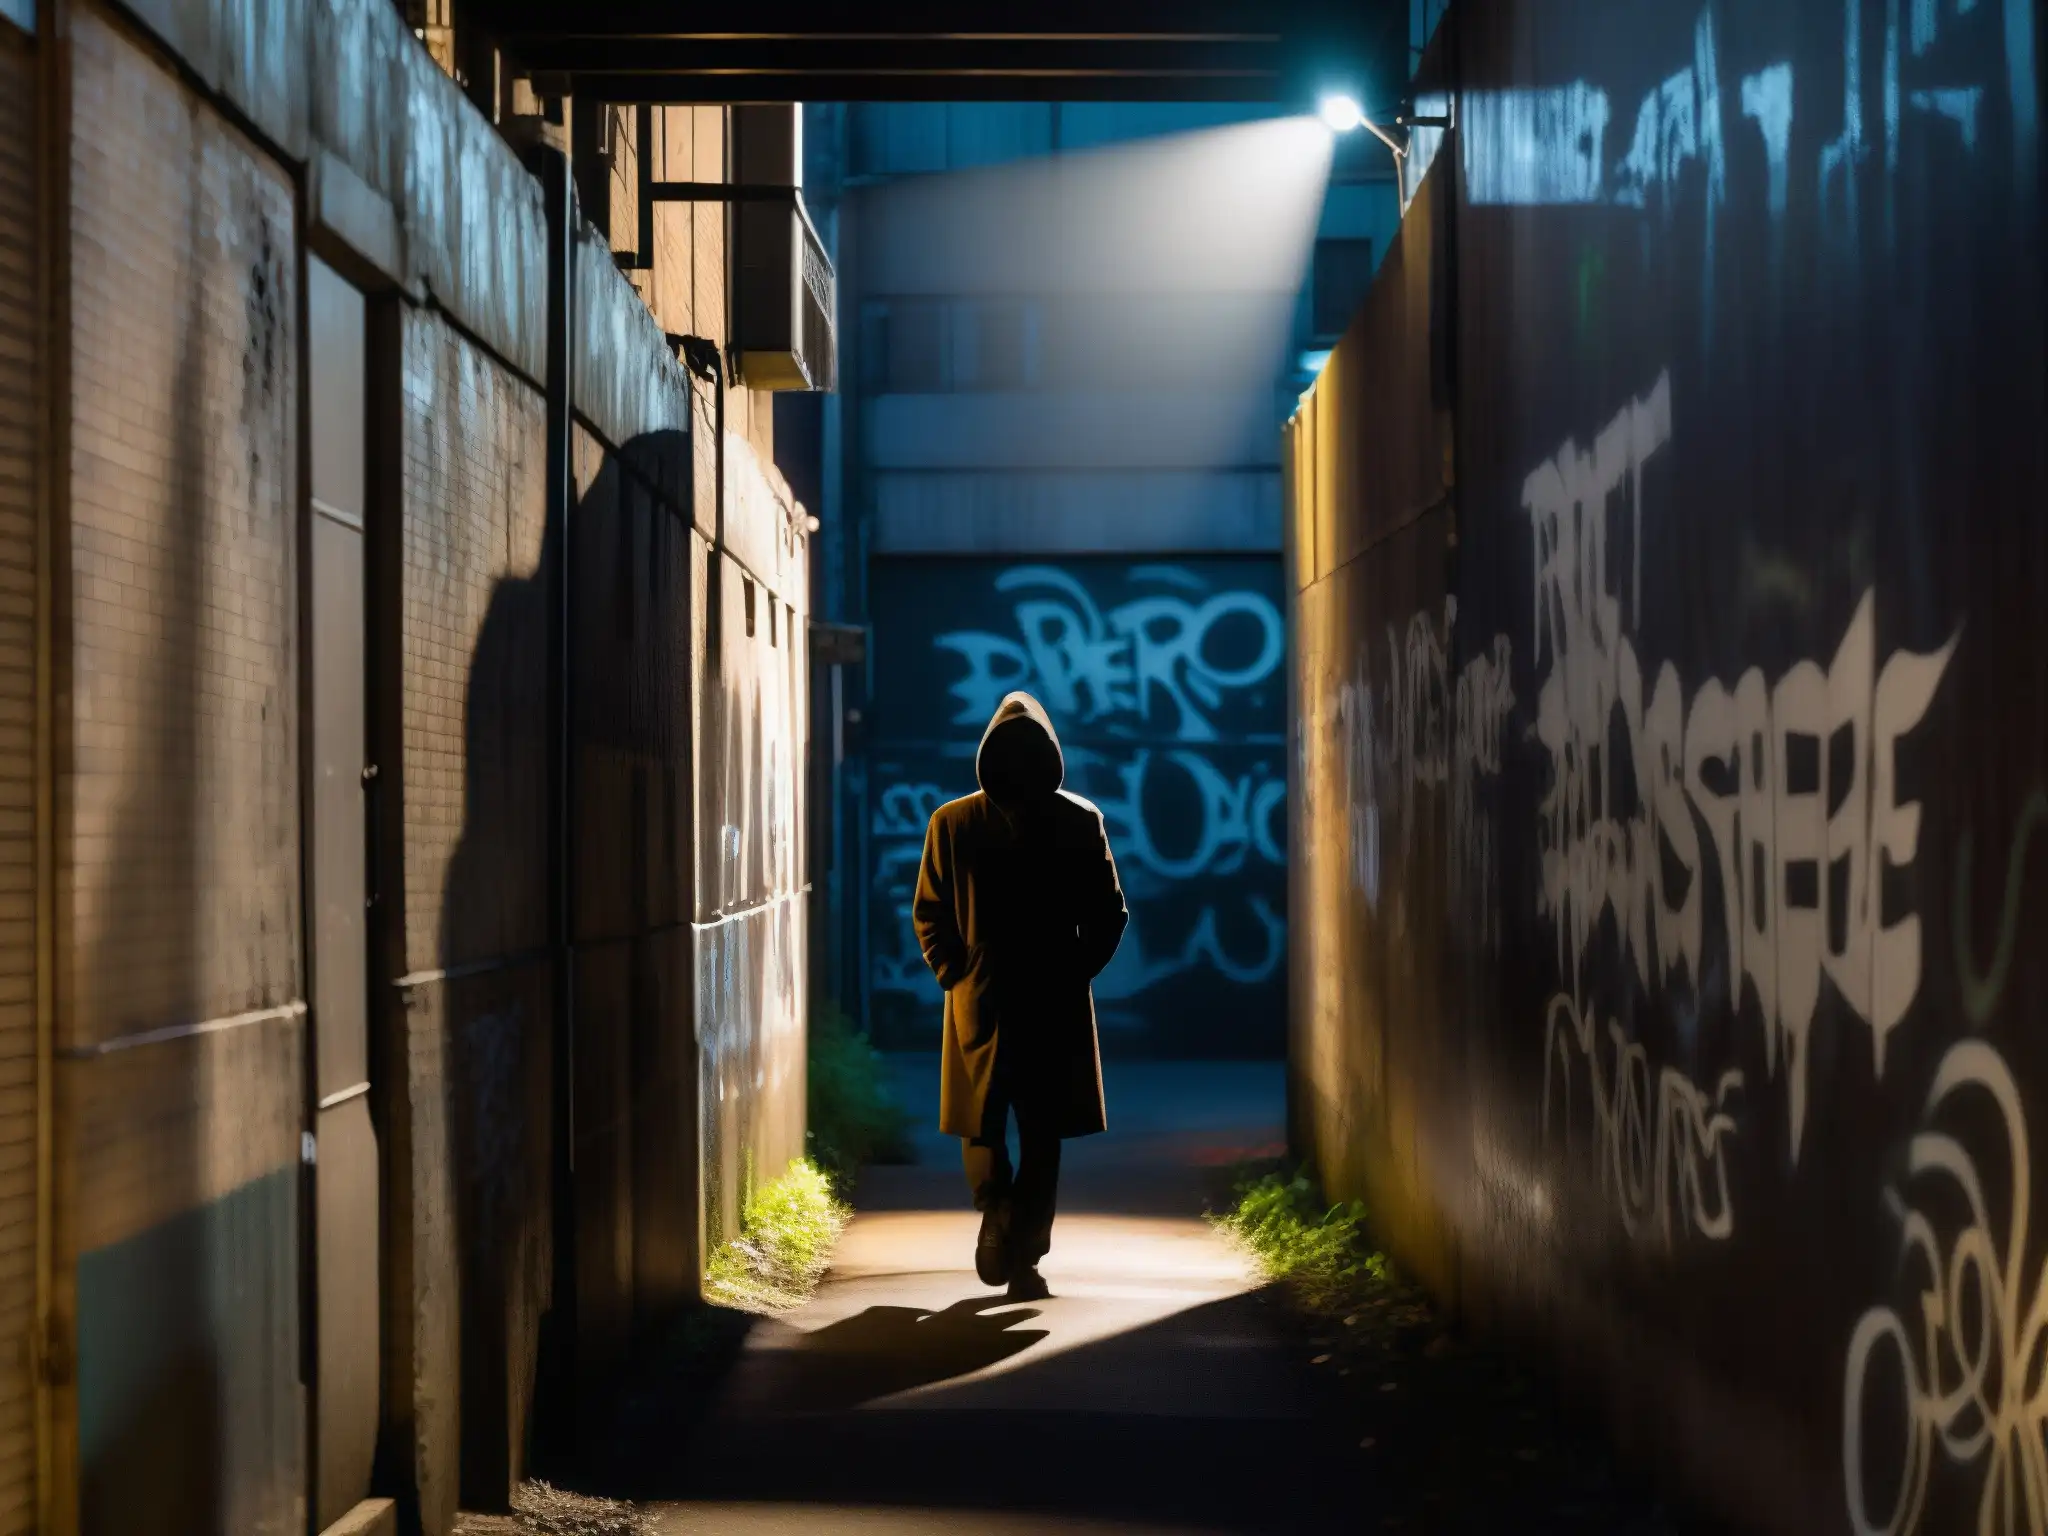 Una misteriosa silueta se destaca en un callejón urbano graffiteado y sombrío, transmitiendo una atmósfera inquietante